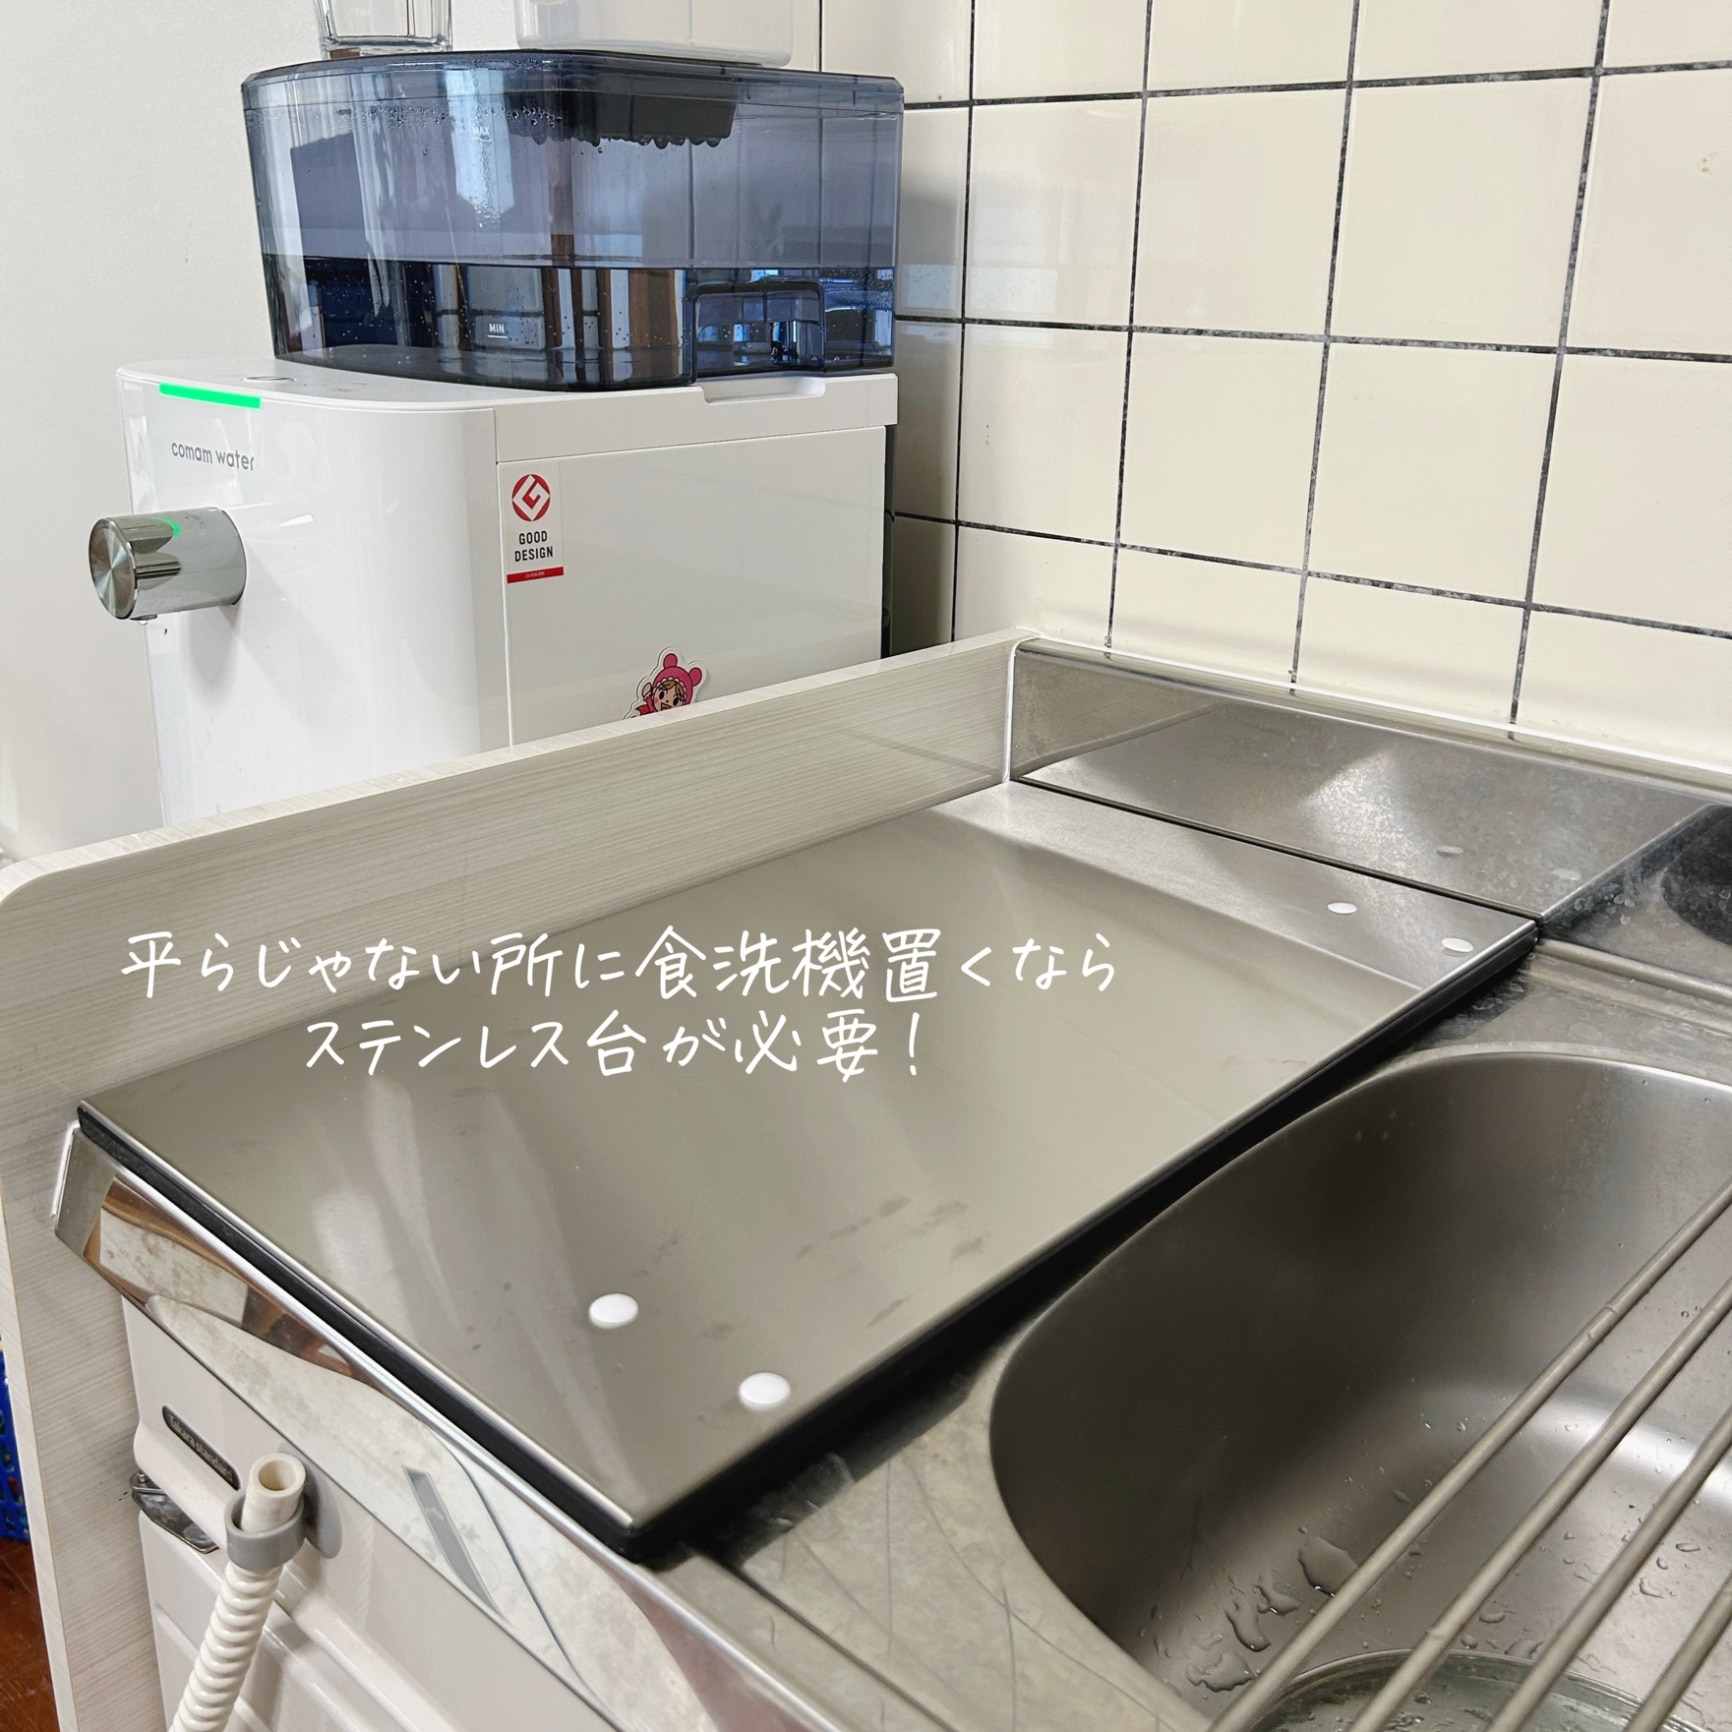 パナソニック N-SP3 純正部品 ステンレス製卓上型食器洗い機専用置台 